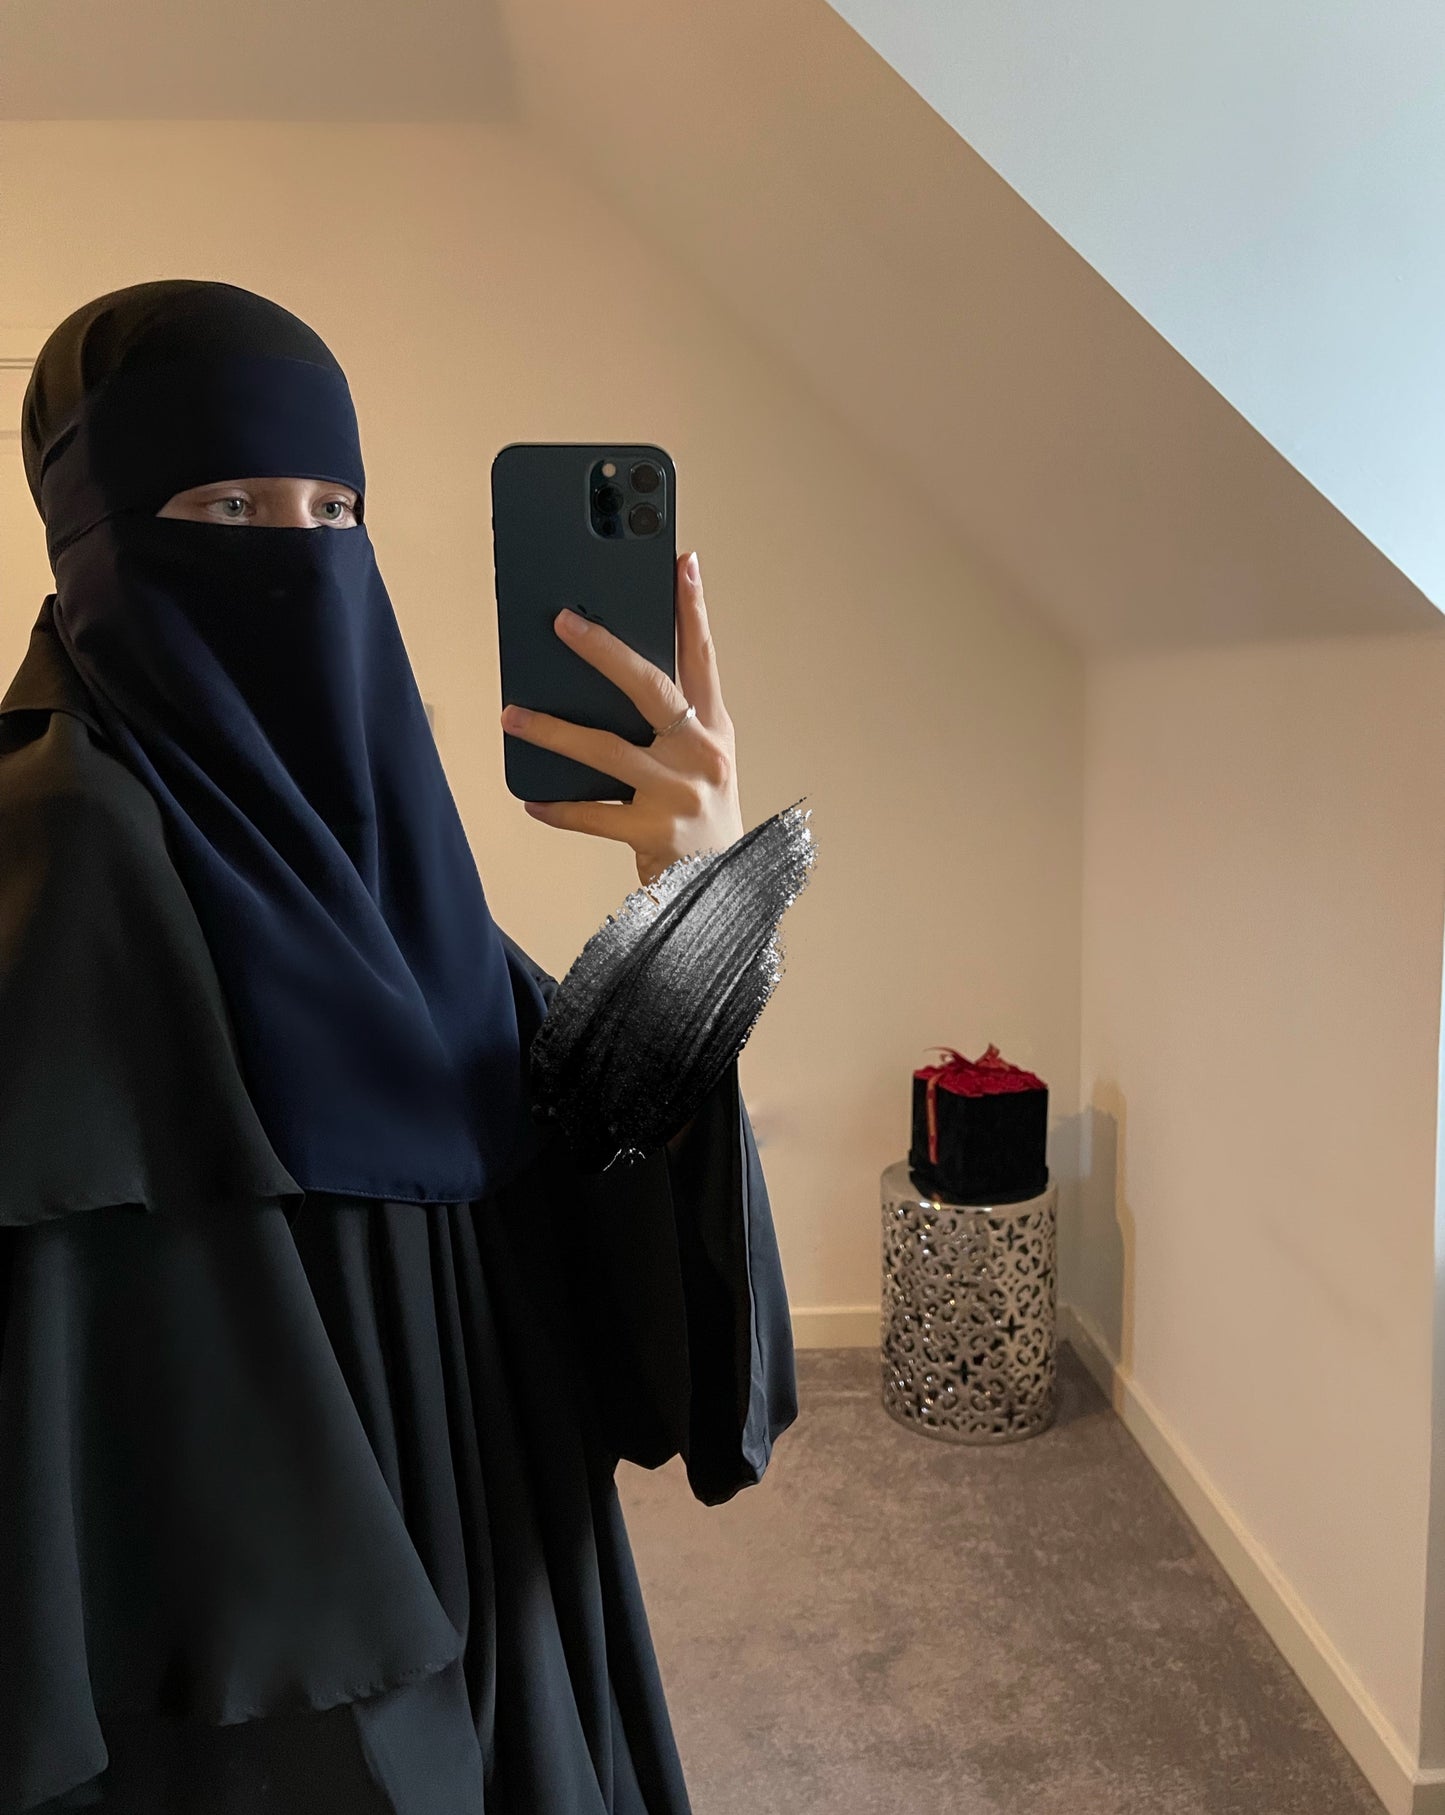 Single layer niqab